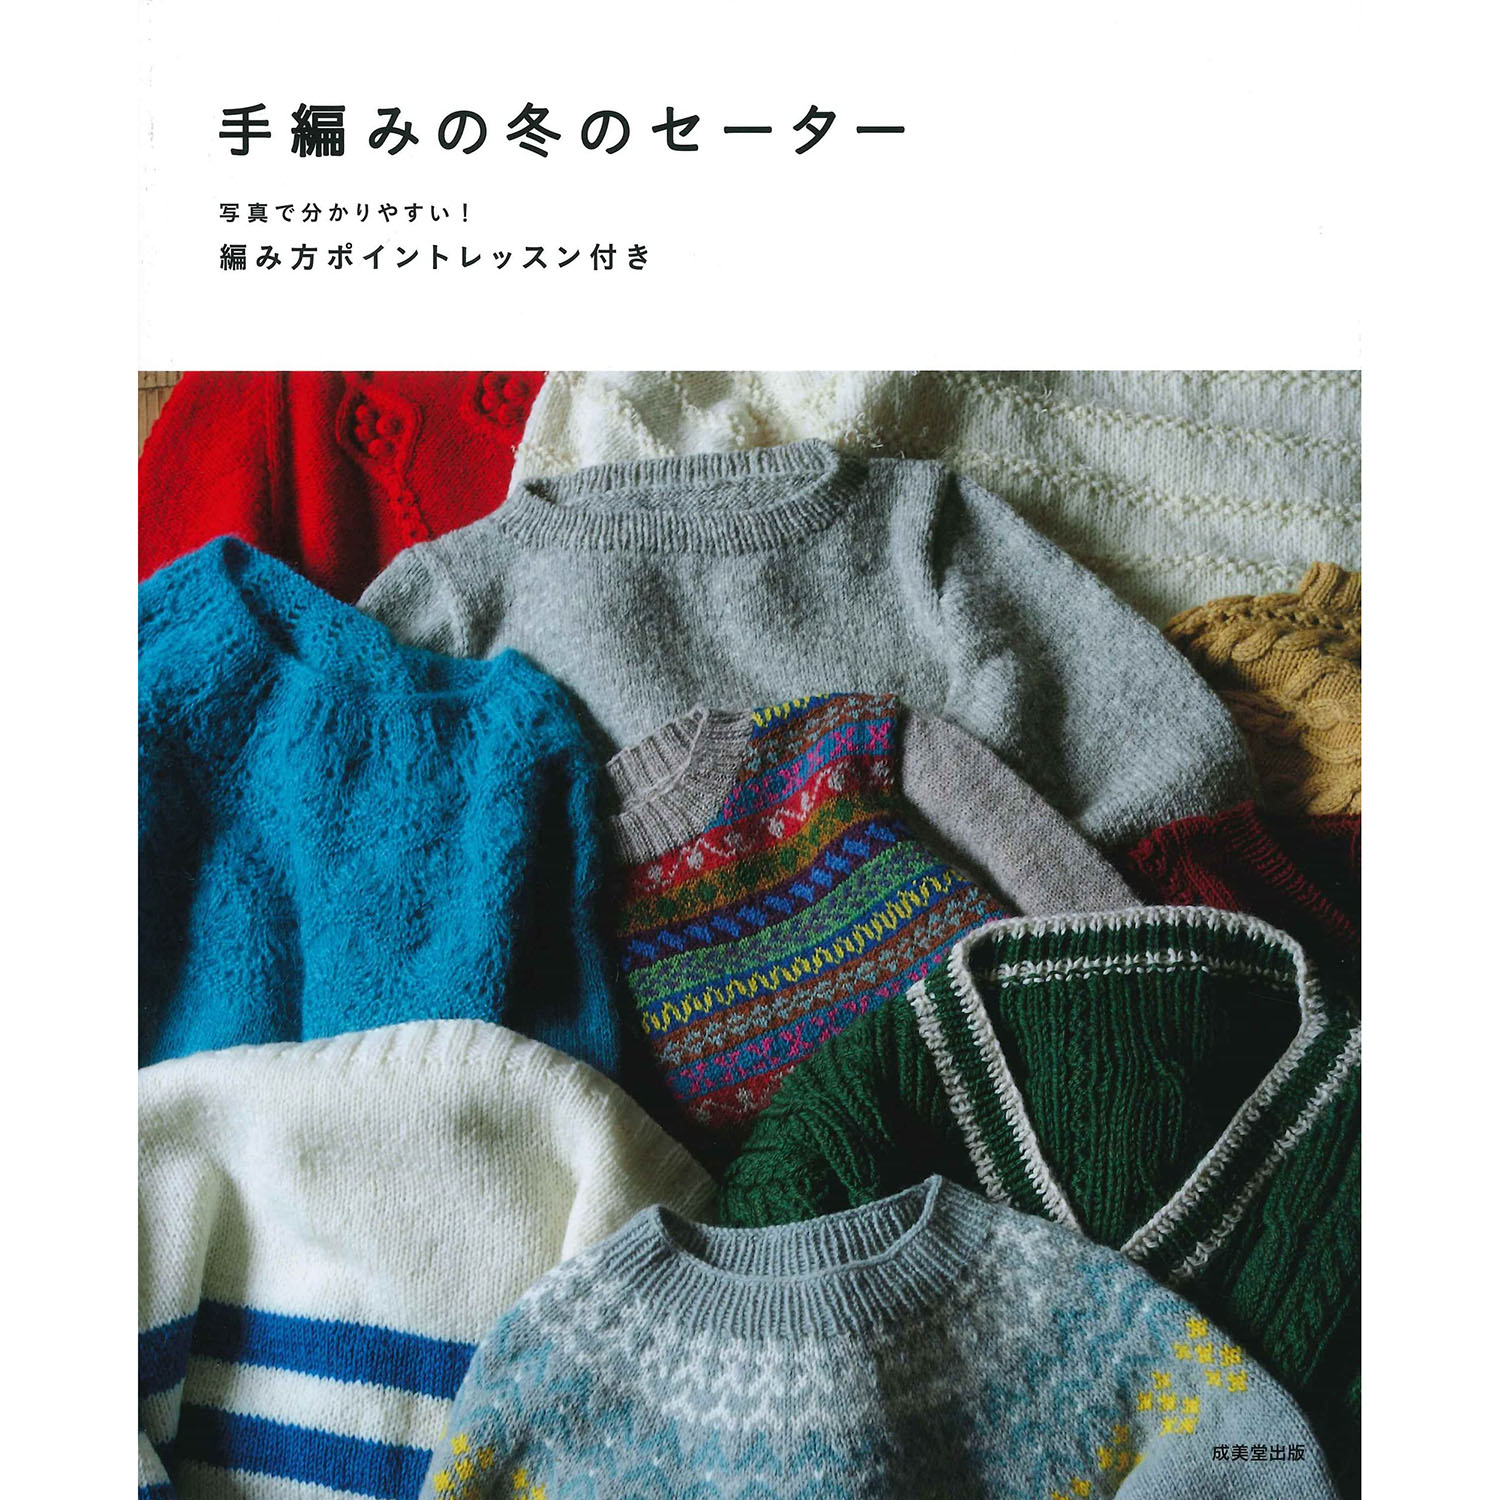 【お取り寄せ・返品不可】SBD33043 手編みの冬のセーター /成美堂出版 (冊)